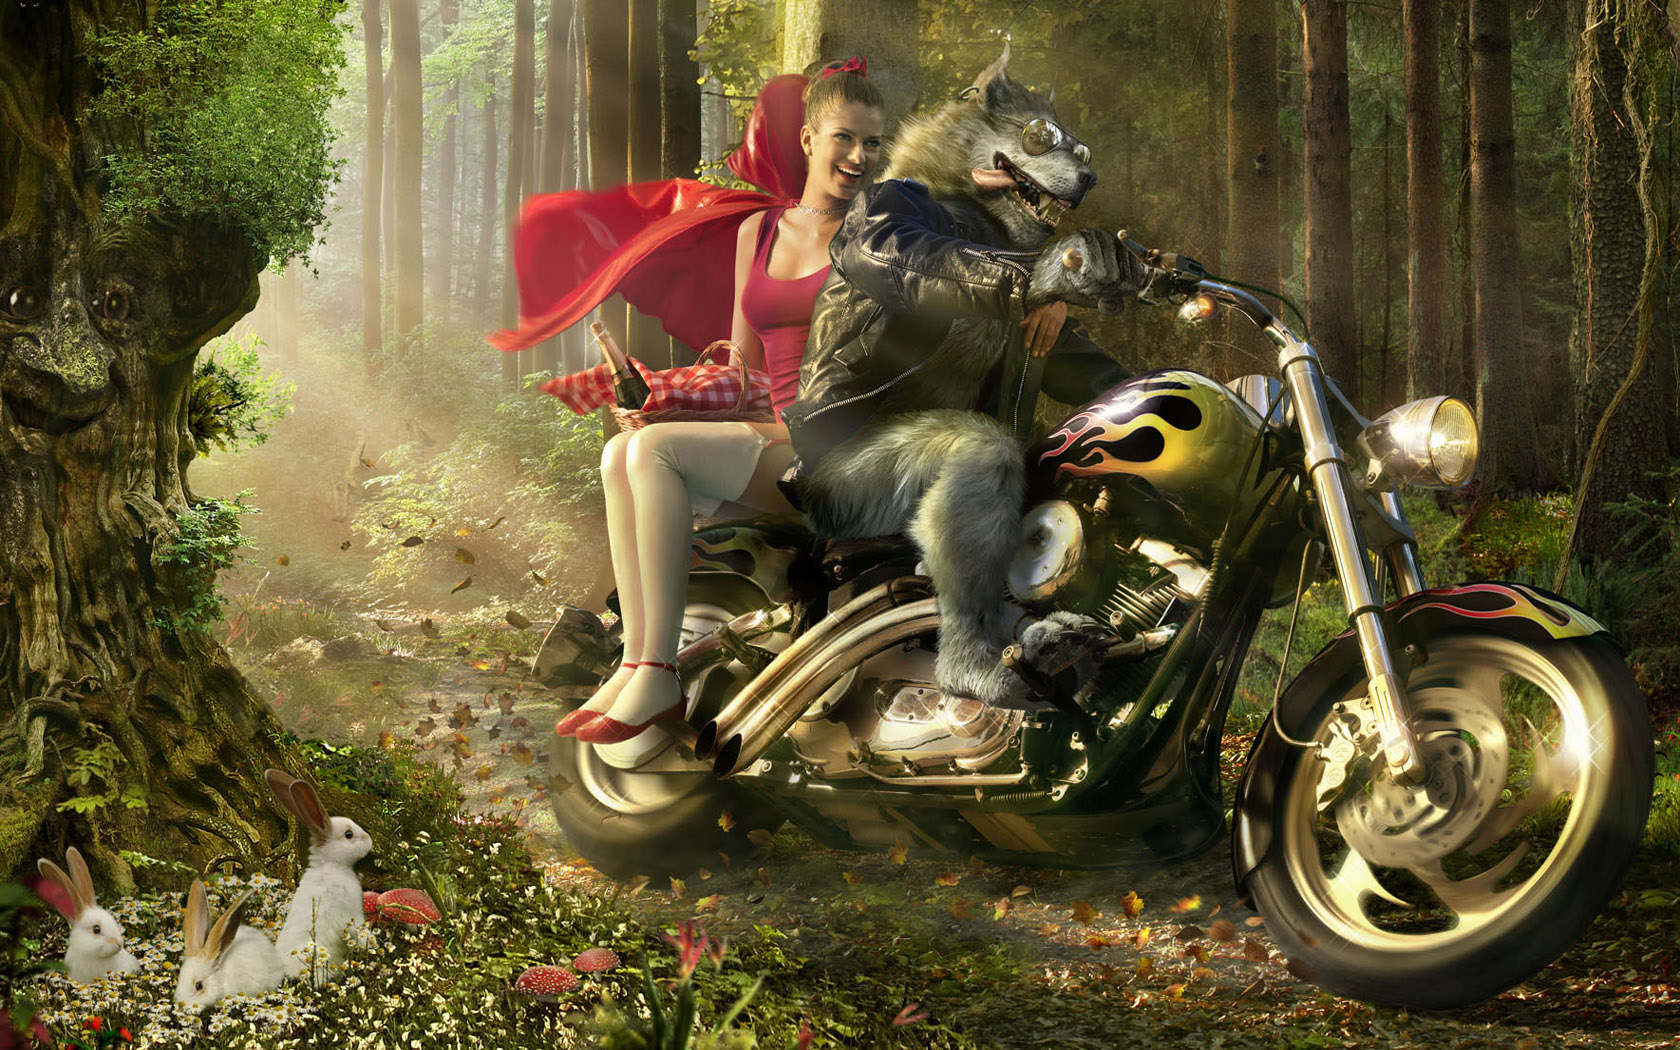 Волк и Красная шапочка в лесу на мотоцикле Креативные с приколом картинки, обои рабочий стол